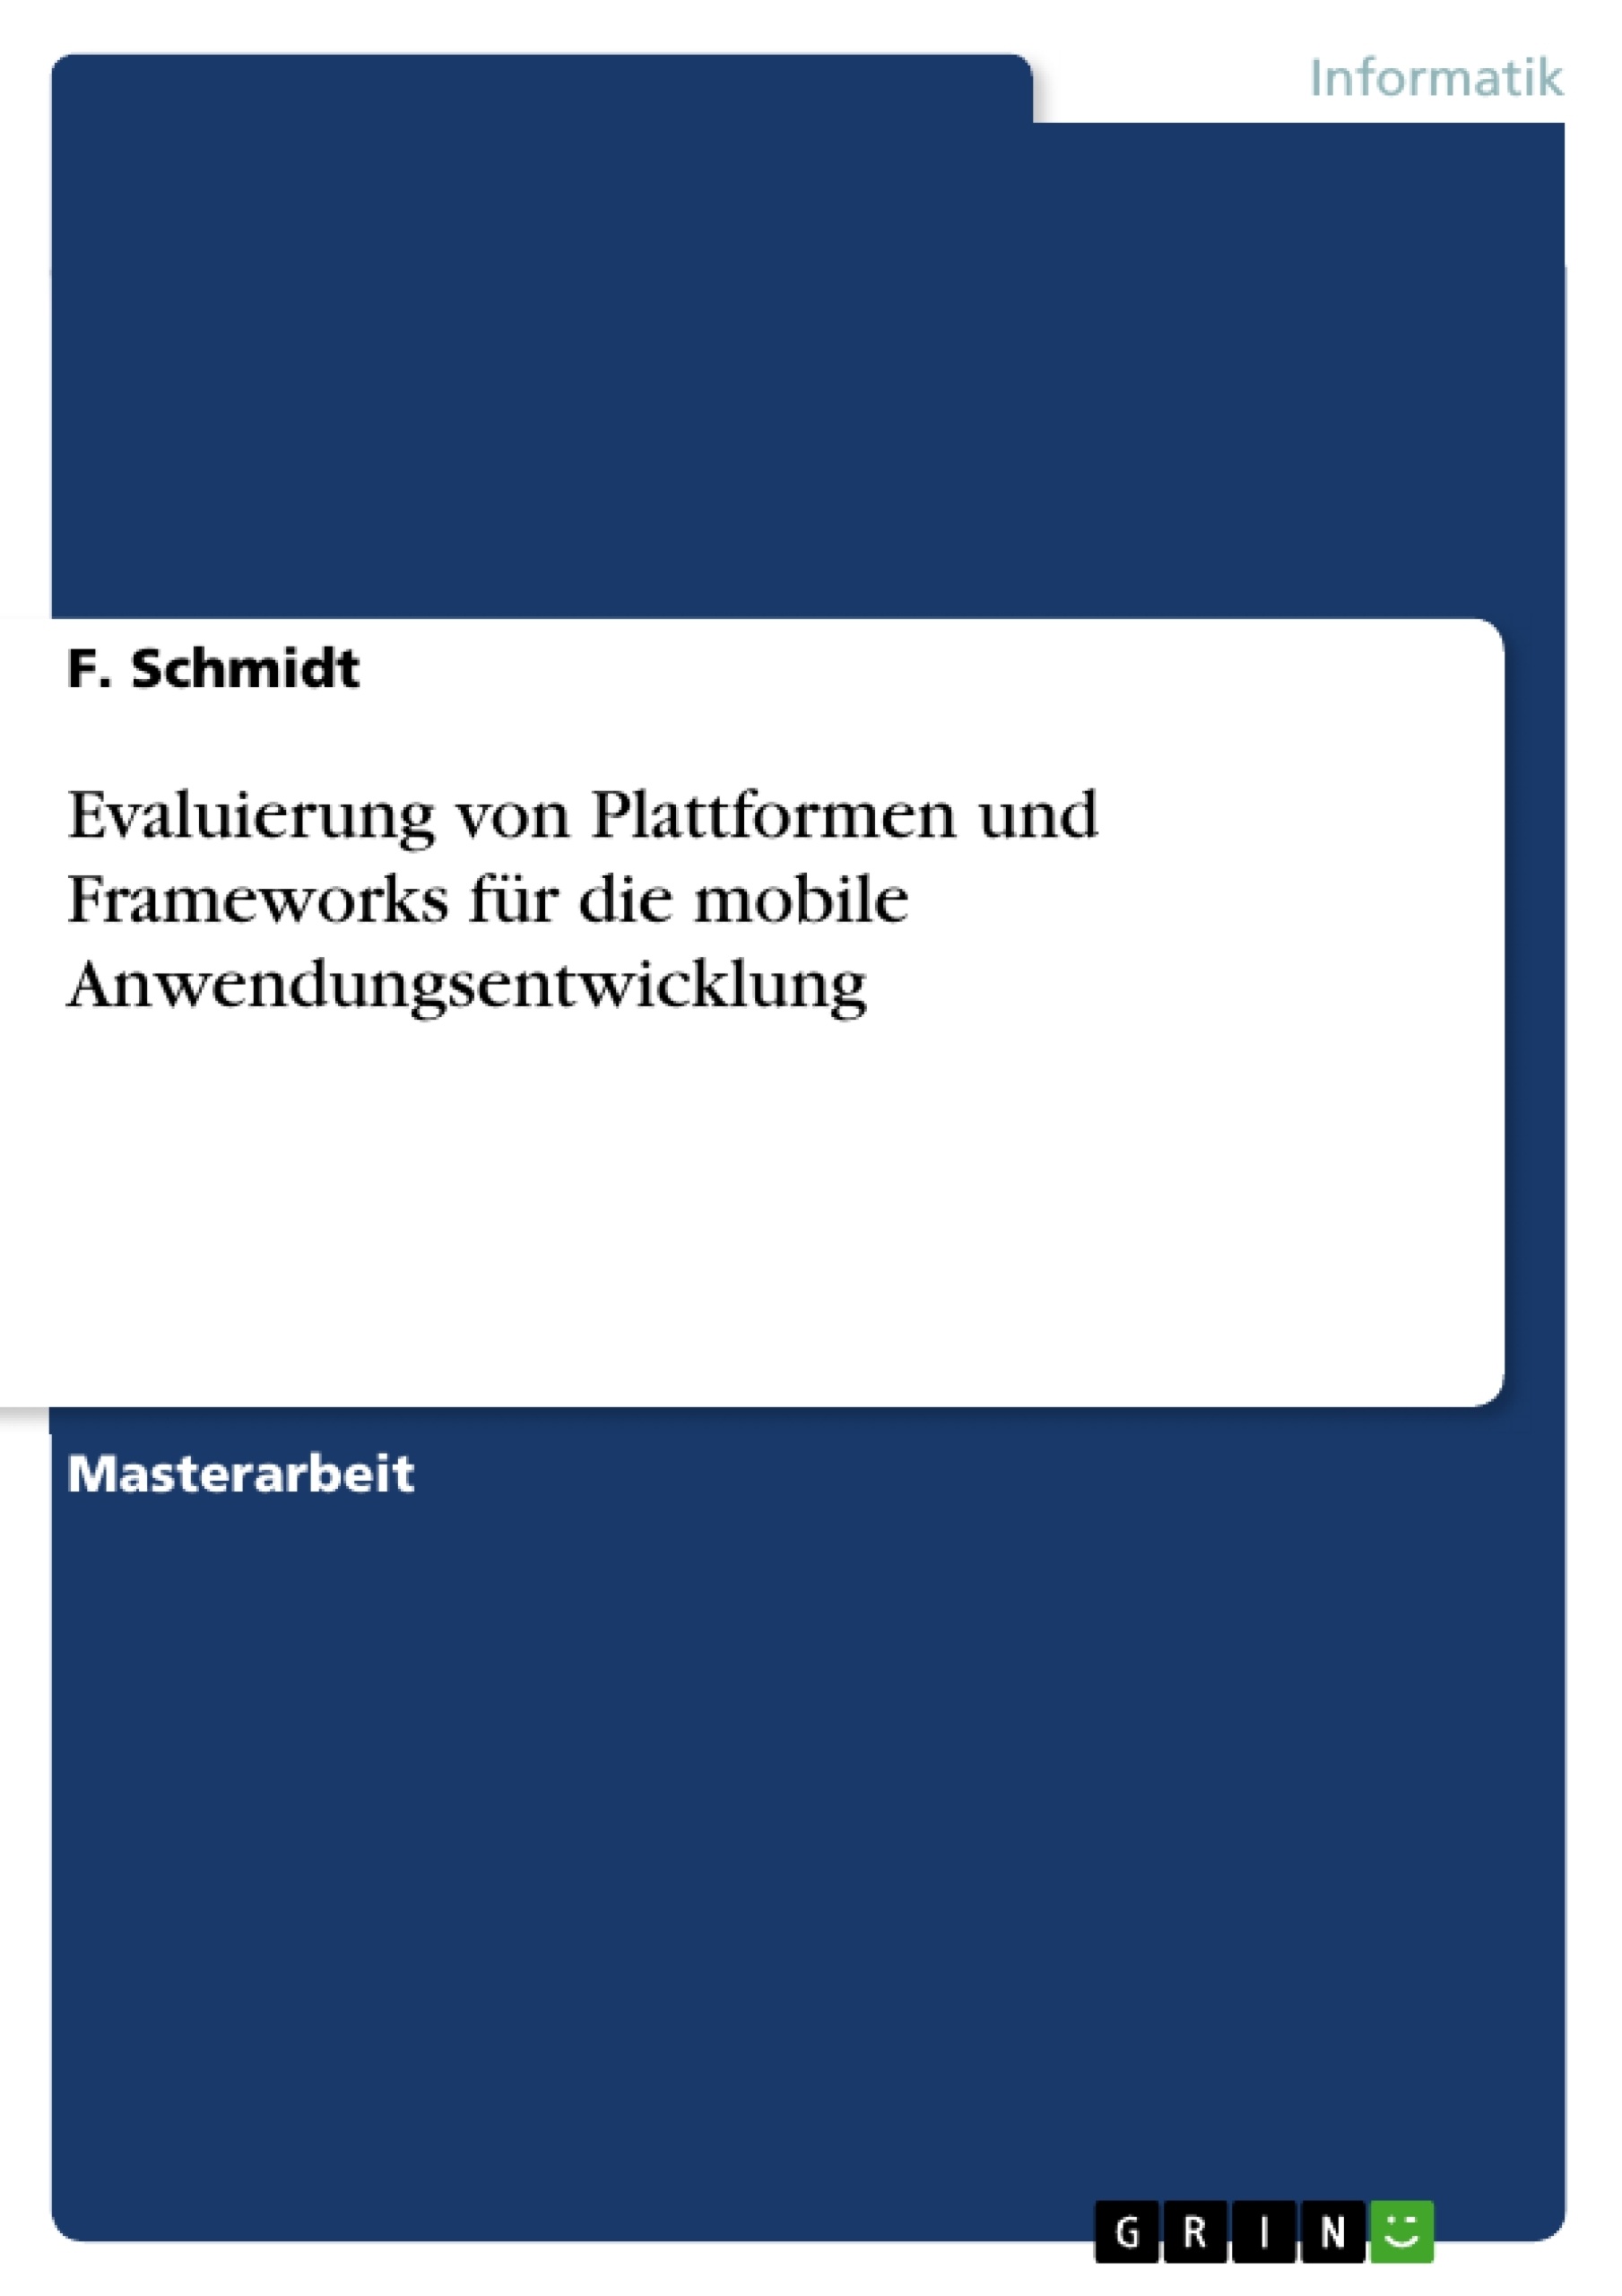 Title: Evaluierung von Plattformen und Frameworks für die mobile Anwendungsentwicklung